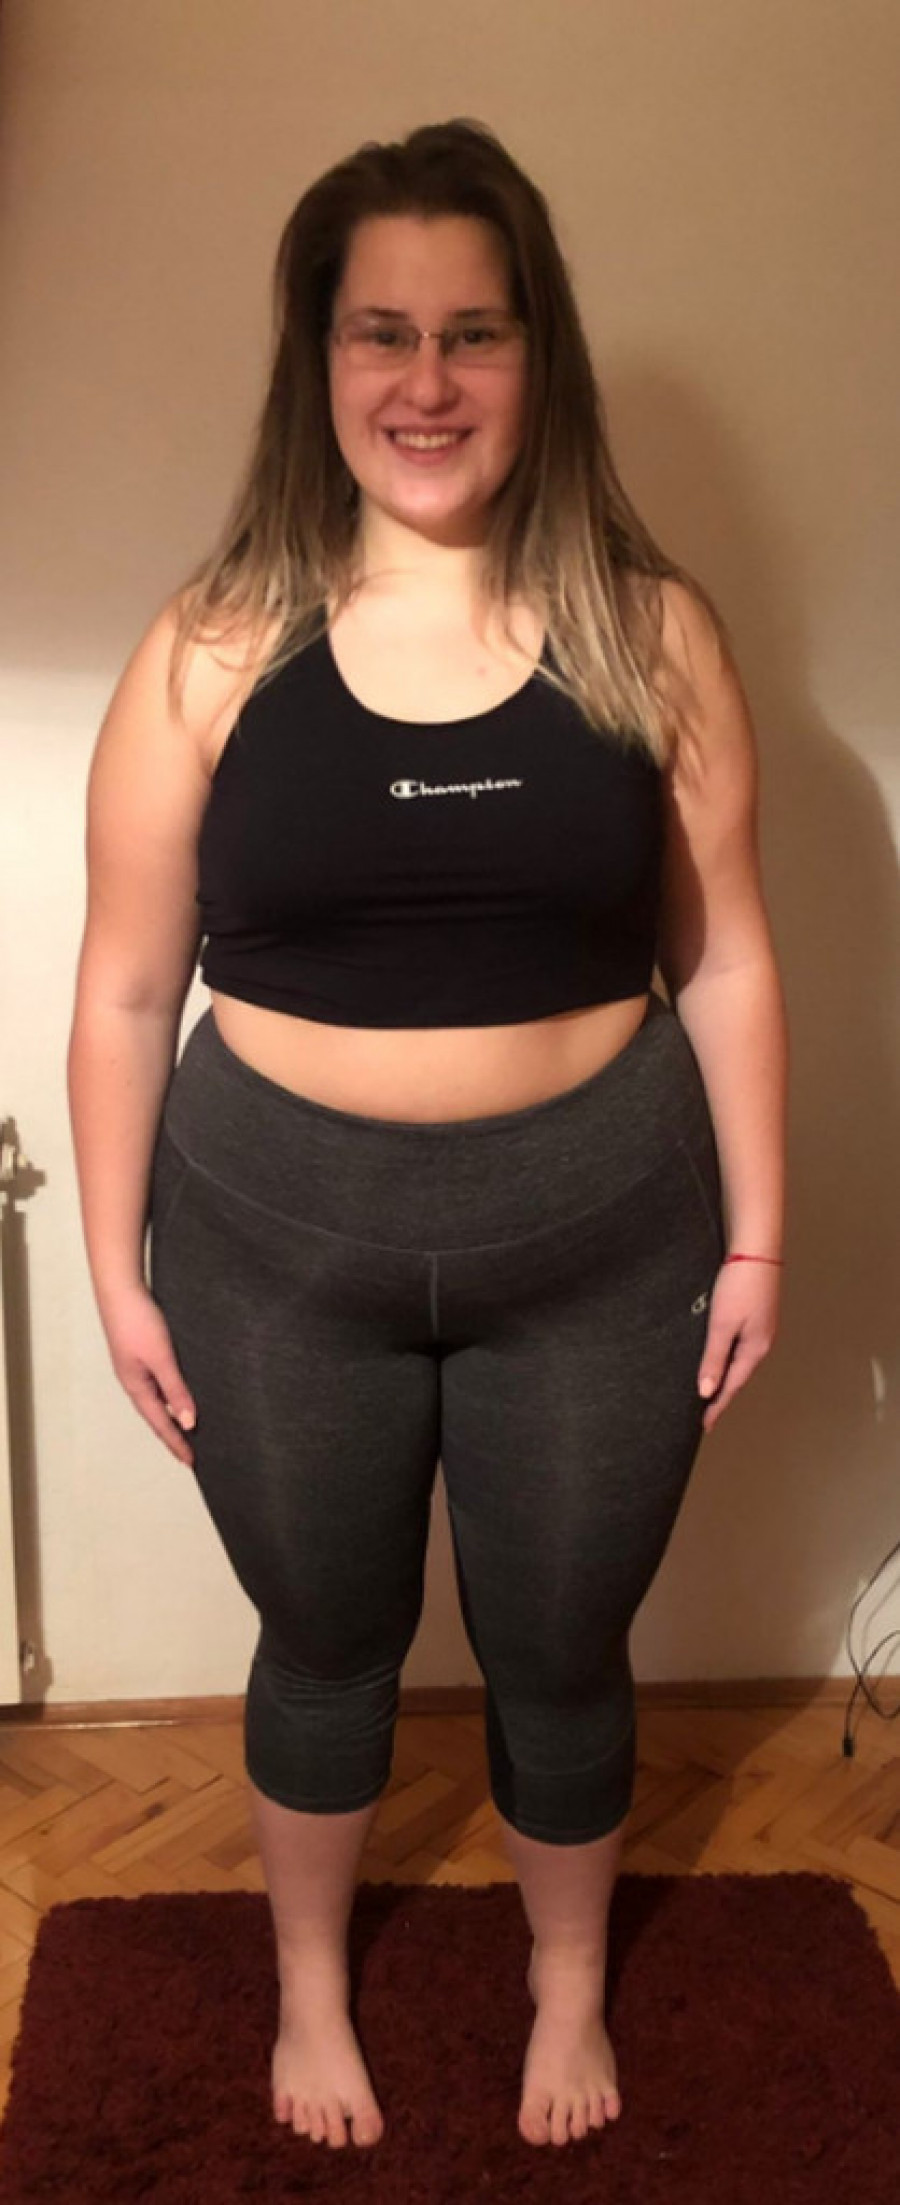 Sara iz Niša za PET meseci smršala 27 kilograma: Evo čega se odrekla i zašto joj sada šalju poruke mržnje